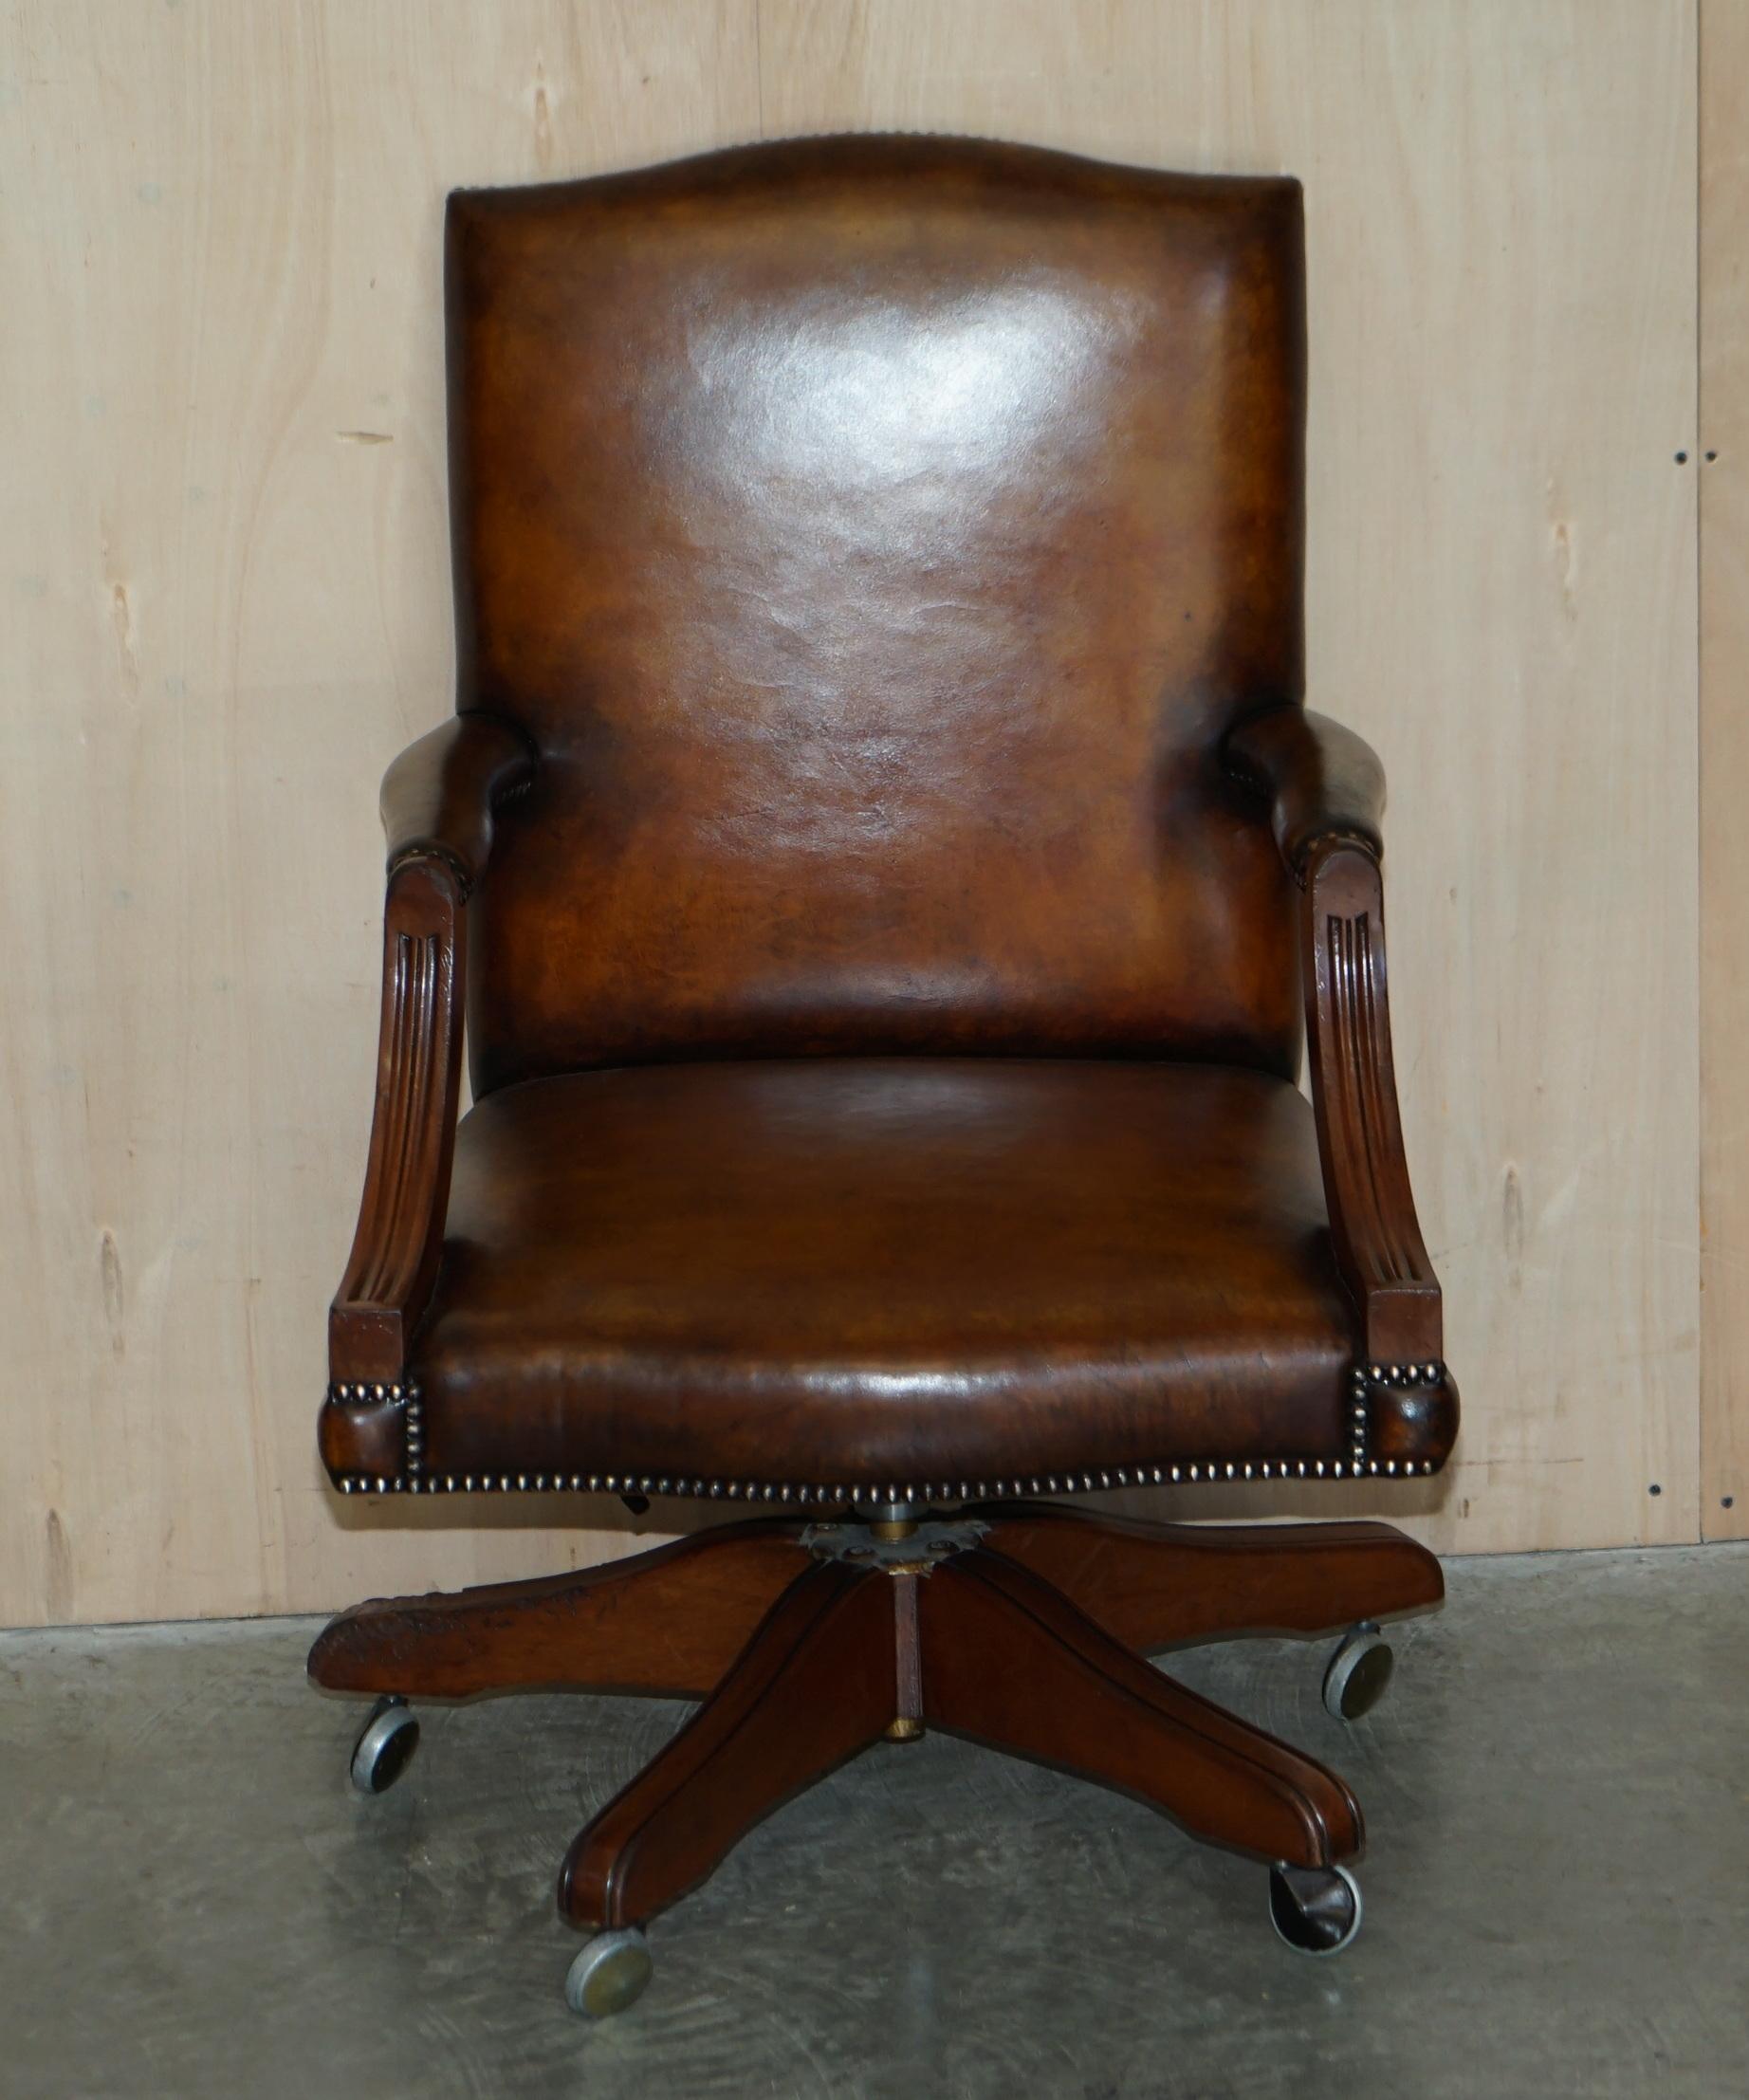 Nous sommes ravis d'offrir à la vente cette belle chaise de directeur en cuir brun cigare teint à la main, entièrement restaurée et encadrée de chêne.

Une très belle chaise de directeur, bien faite et confortable, je n'en ai pas vu une avec un